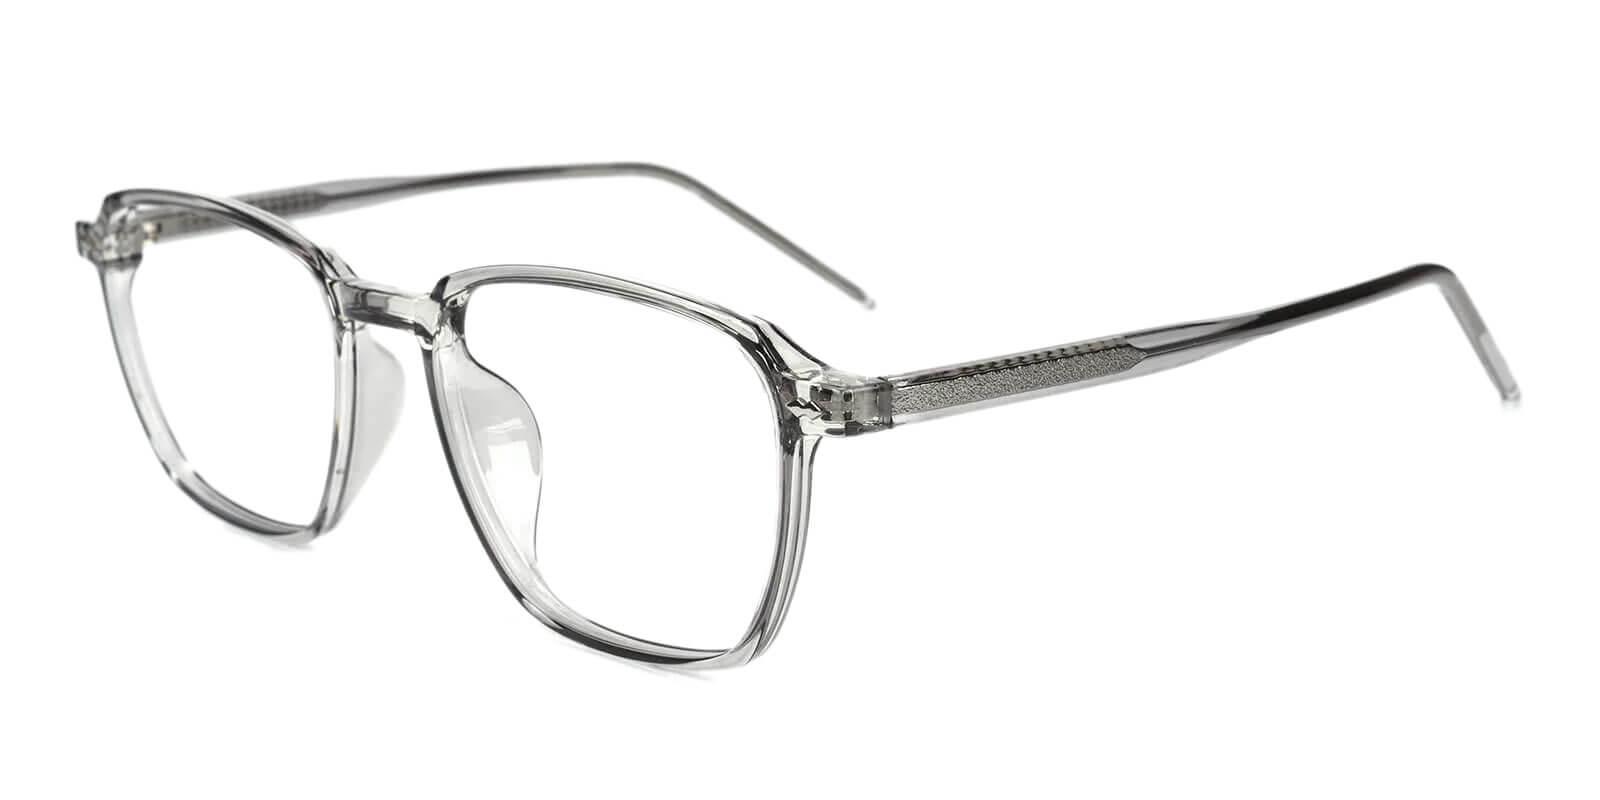 Flume Gray TR Eyeglasses , SpringHinges , UniversalBridgeFit Frames from ABBE Glasses